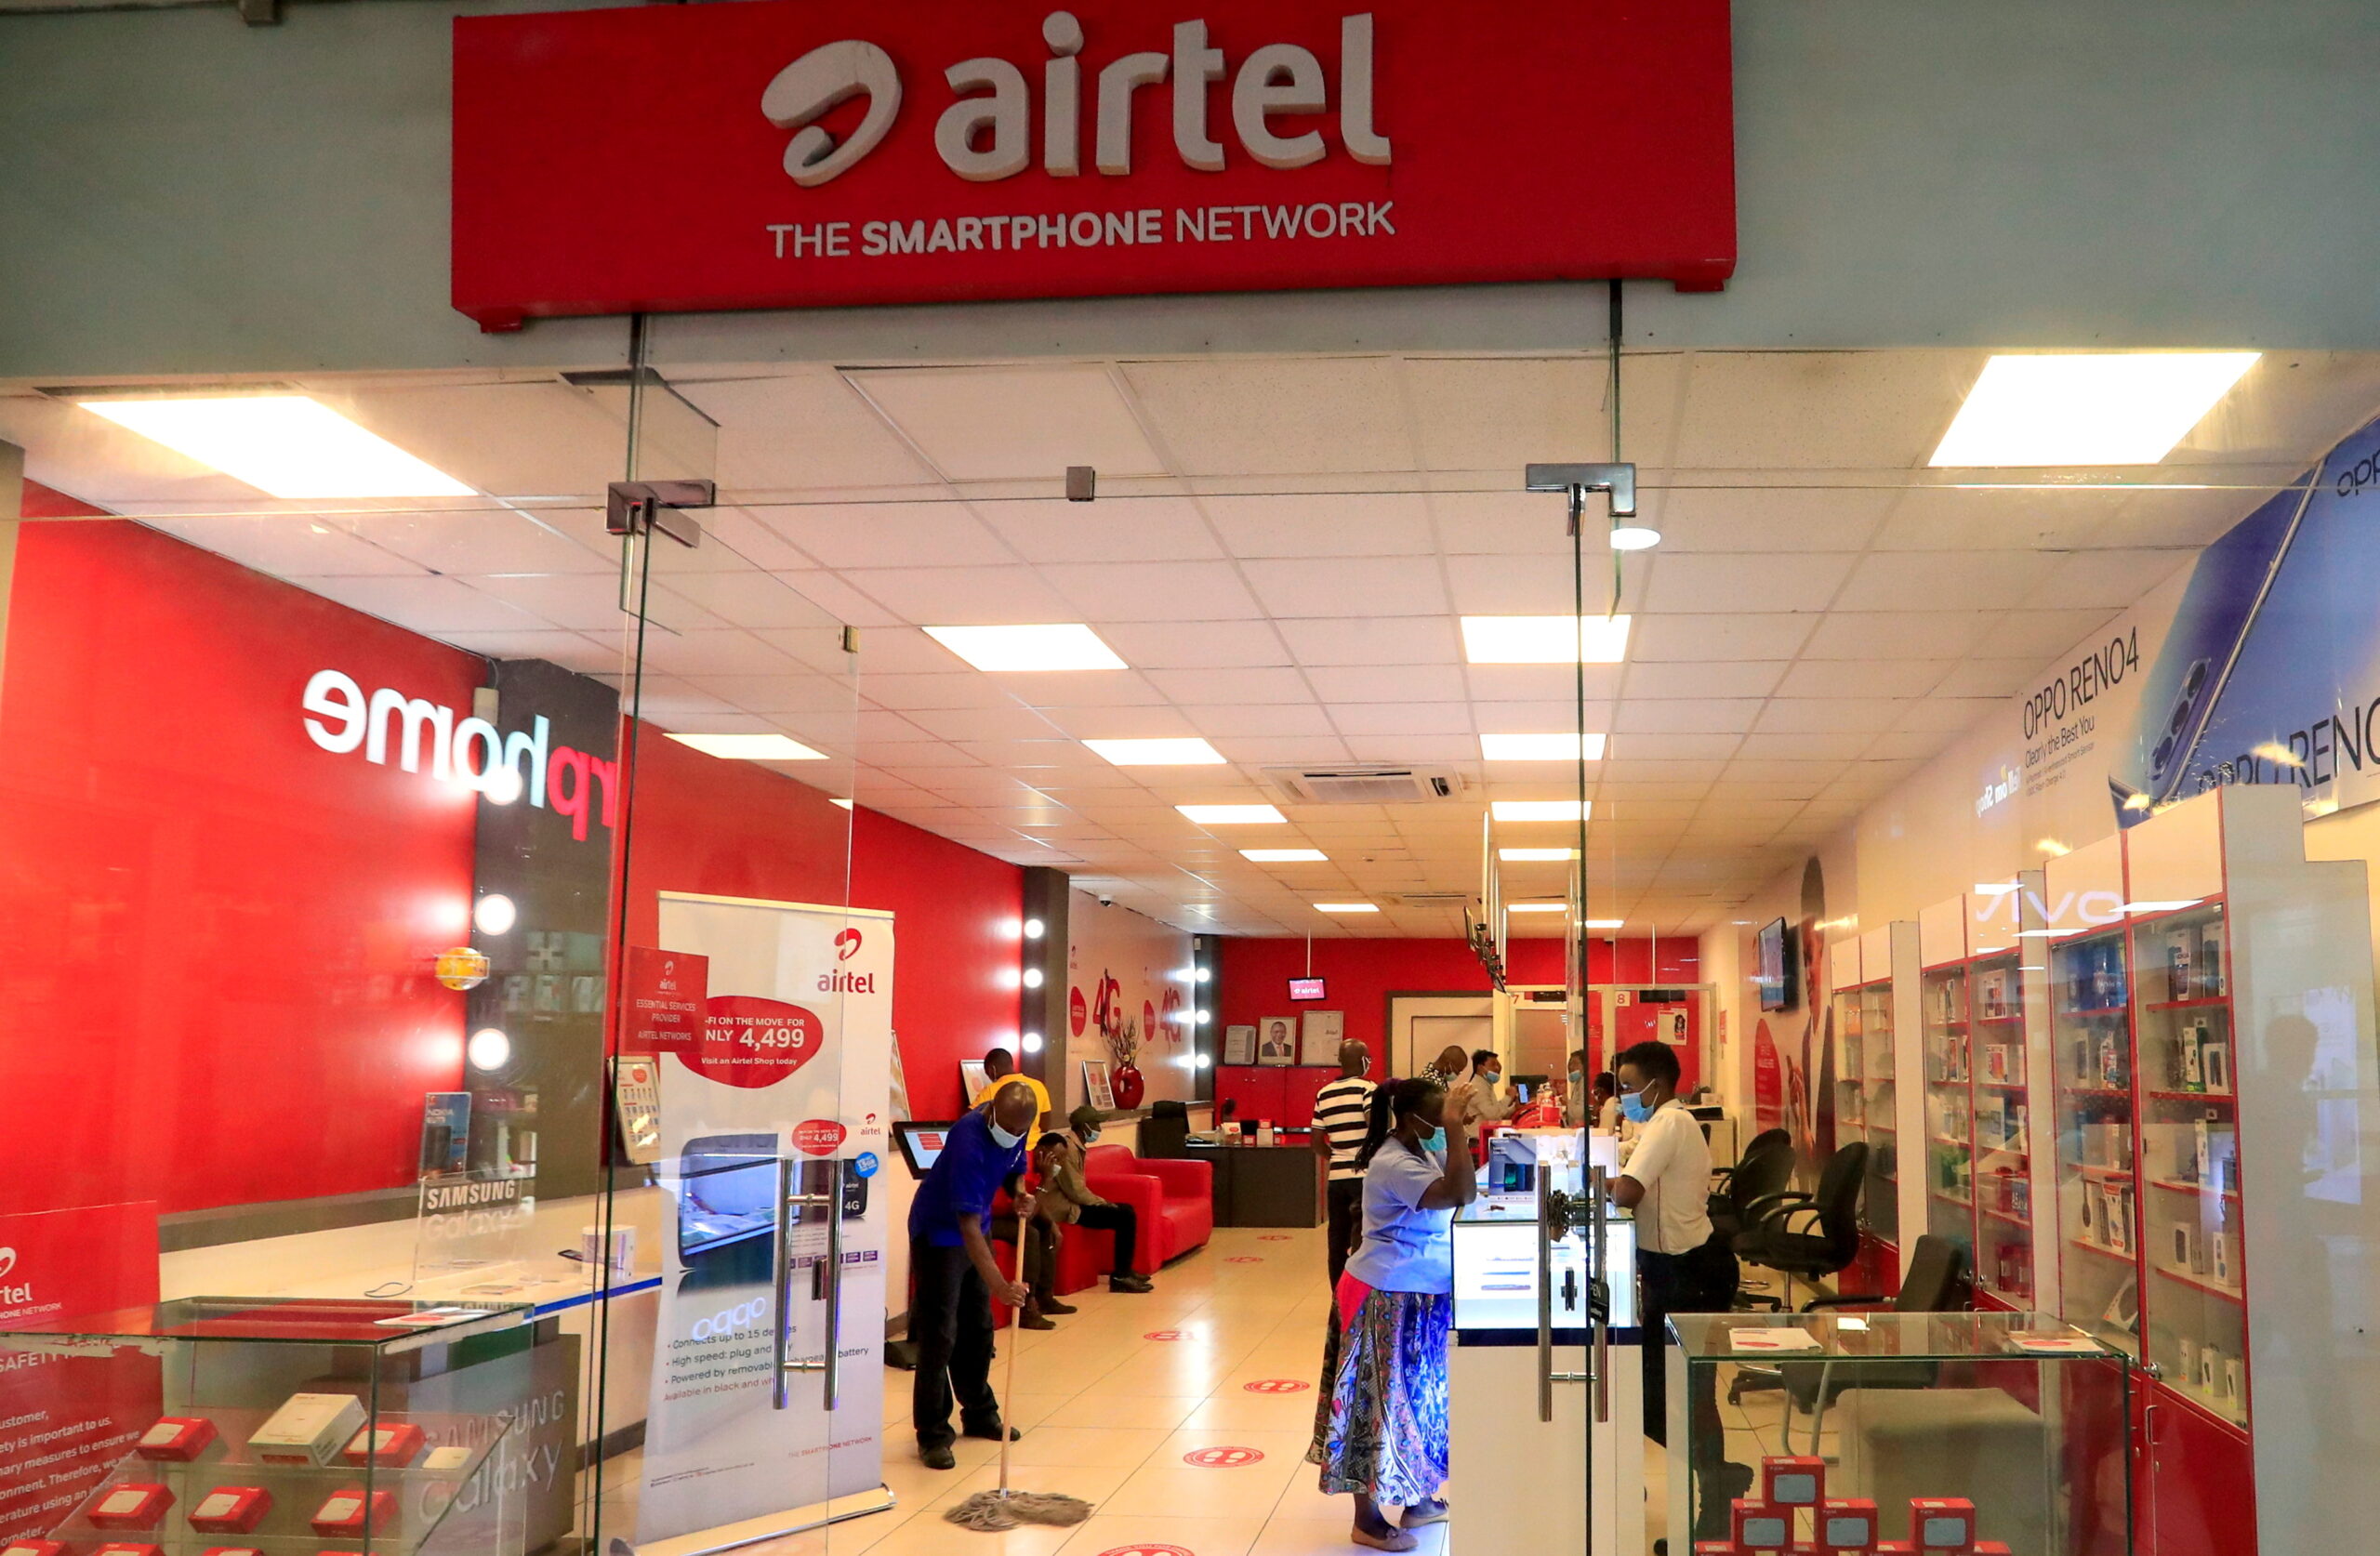 Lire la suite à propos de l’article Airtel Africa franchit la barre des 150 millions de clients en Afrique